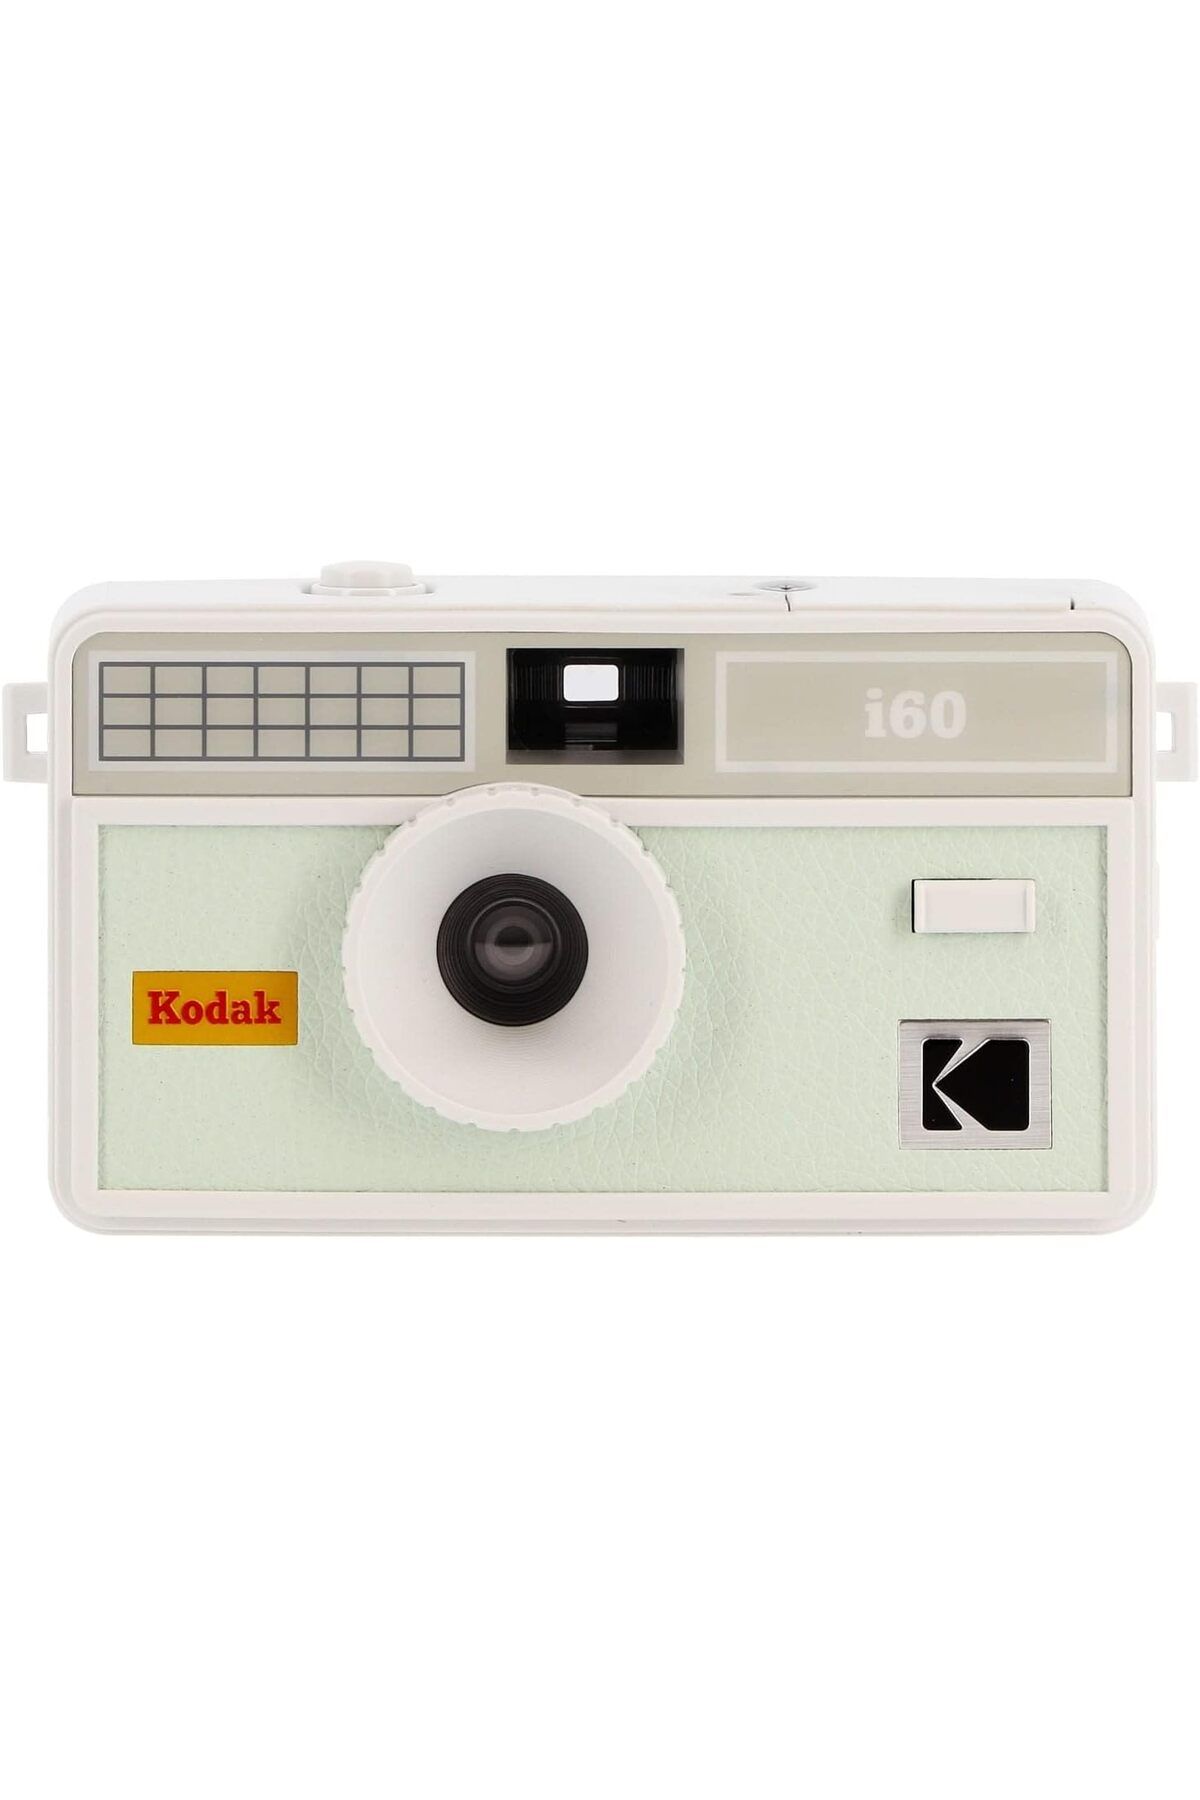 Kodak i60 35 mm Film Kamerası - Retro Tarzı, Odaklamasız, Dahili Flaş, Basmalı ve Açılır Flaş